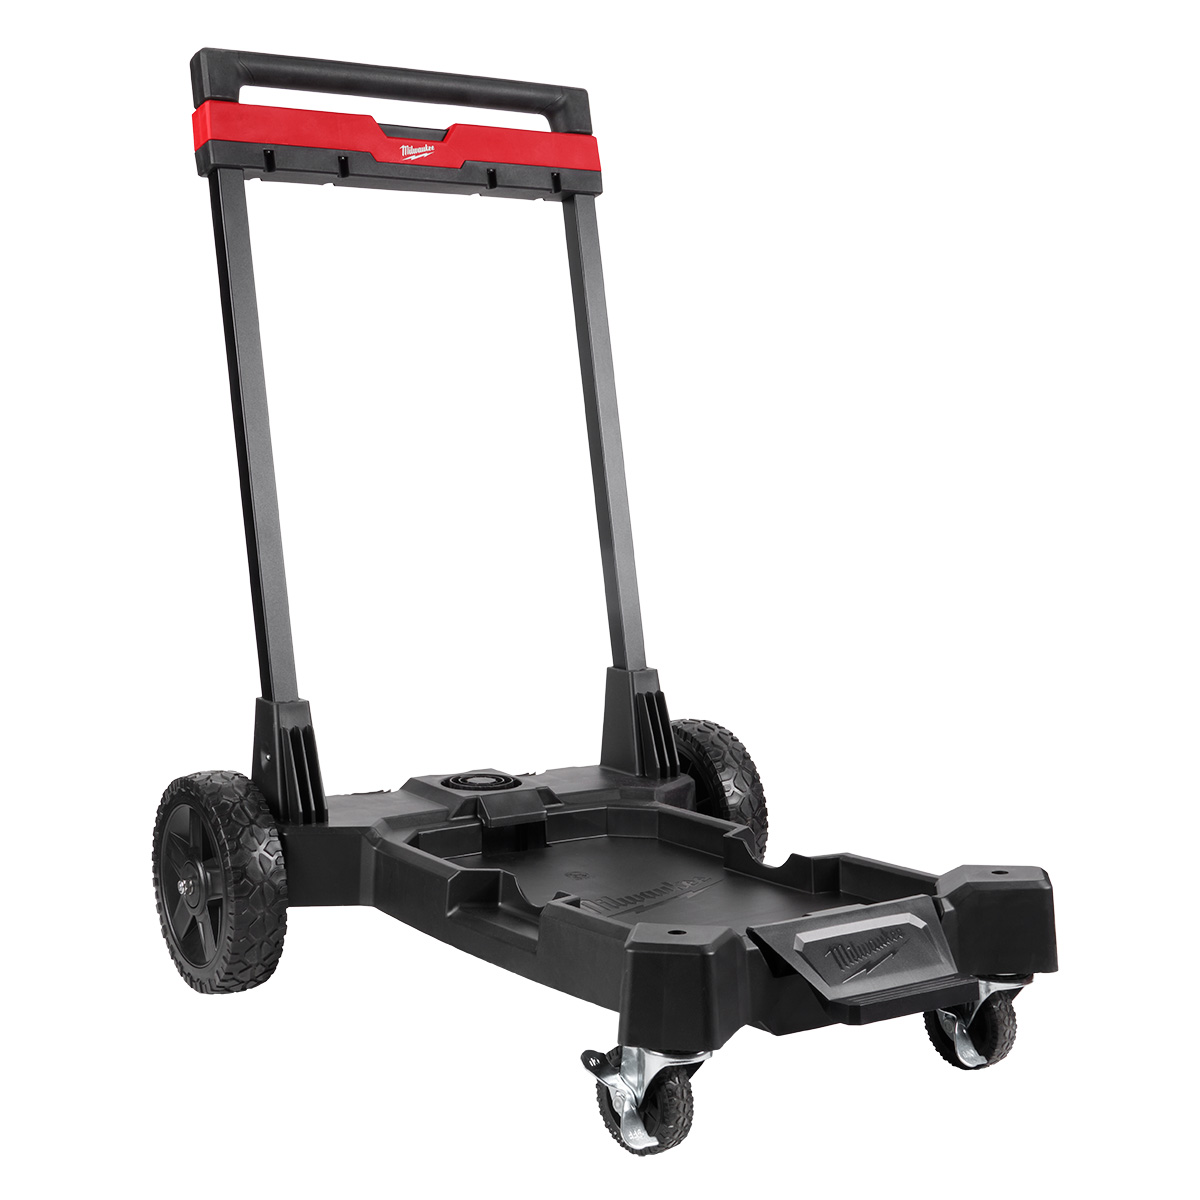 Premium Wet/Dry Vacuum Cart